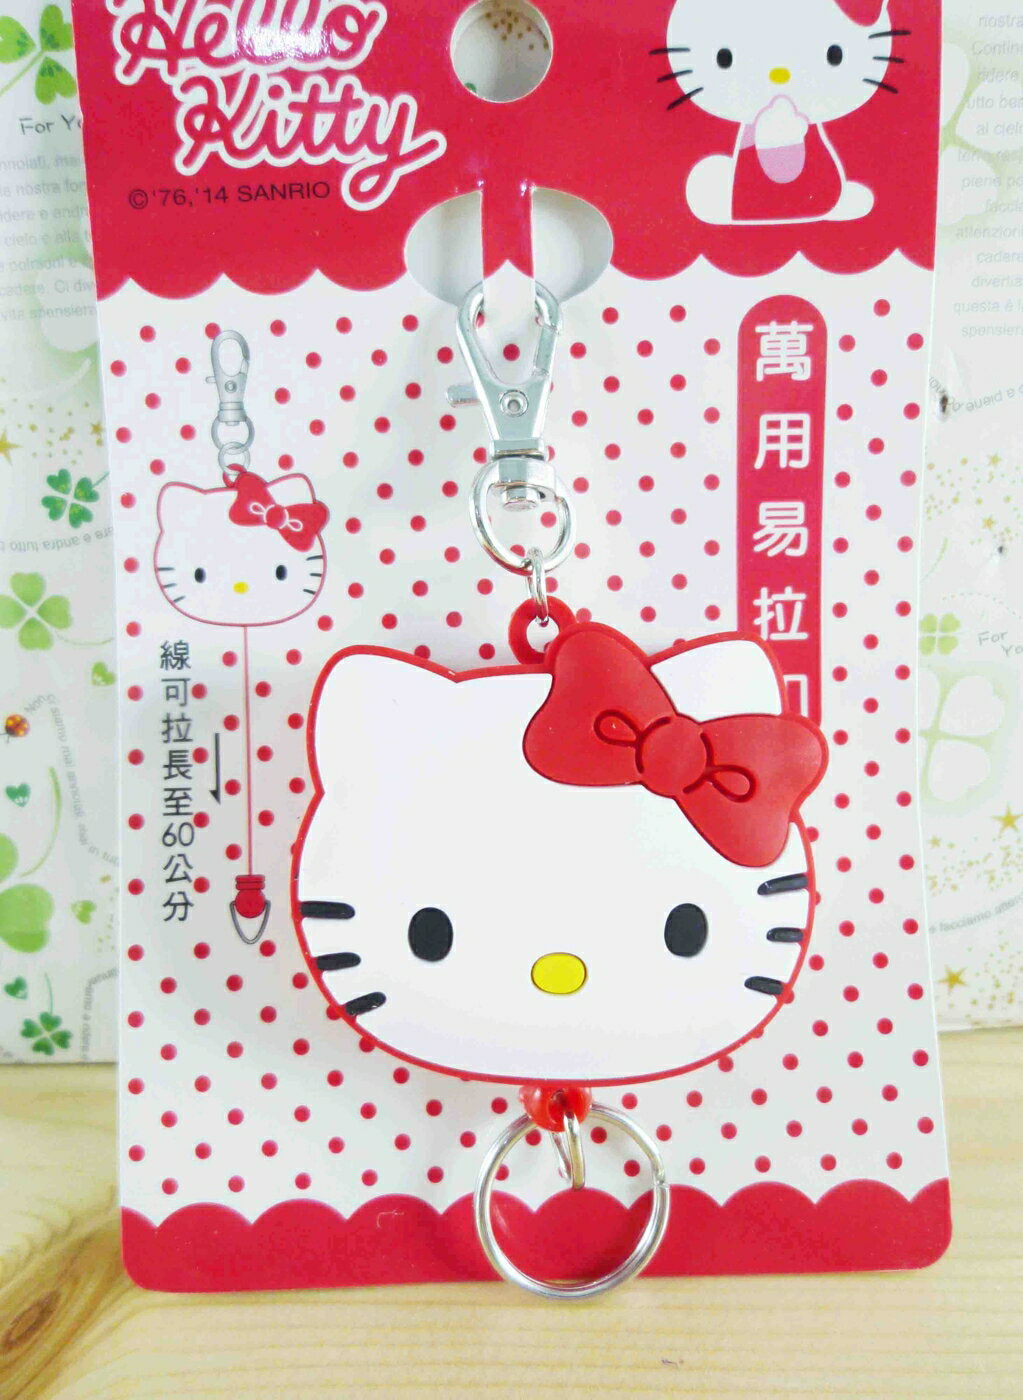 【震撼精品百貨】Hello Kitty 凱蒂貓 KITTY頭型伸縮扣-紅 震撼日式精品百貨